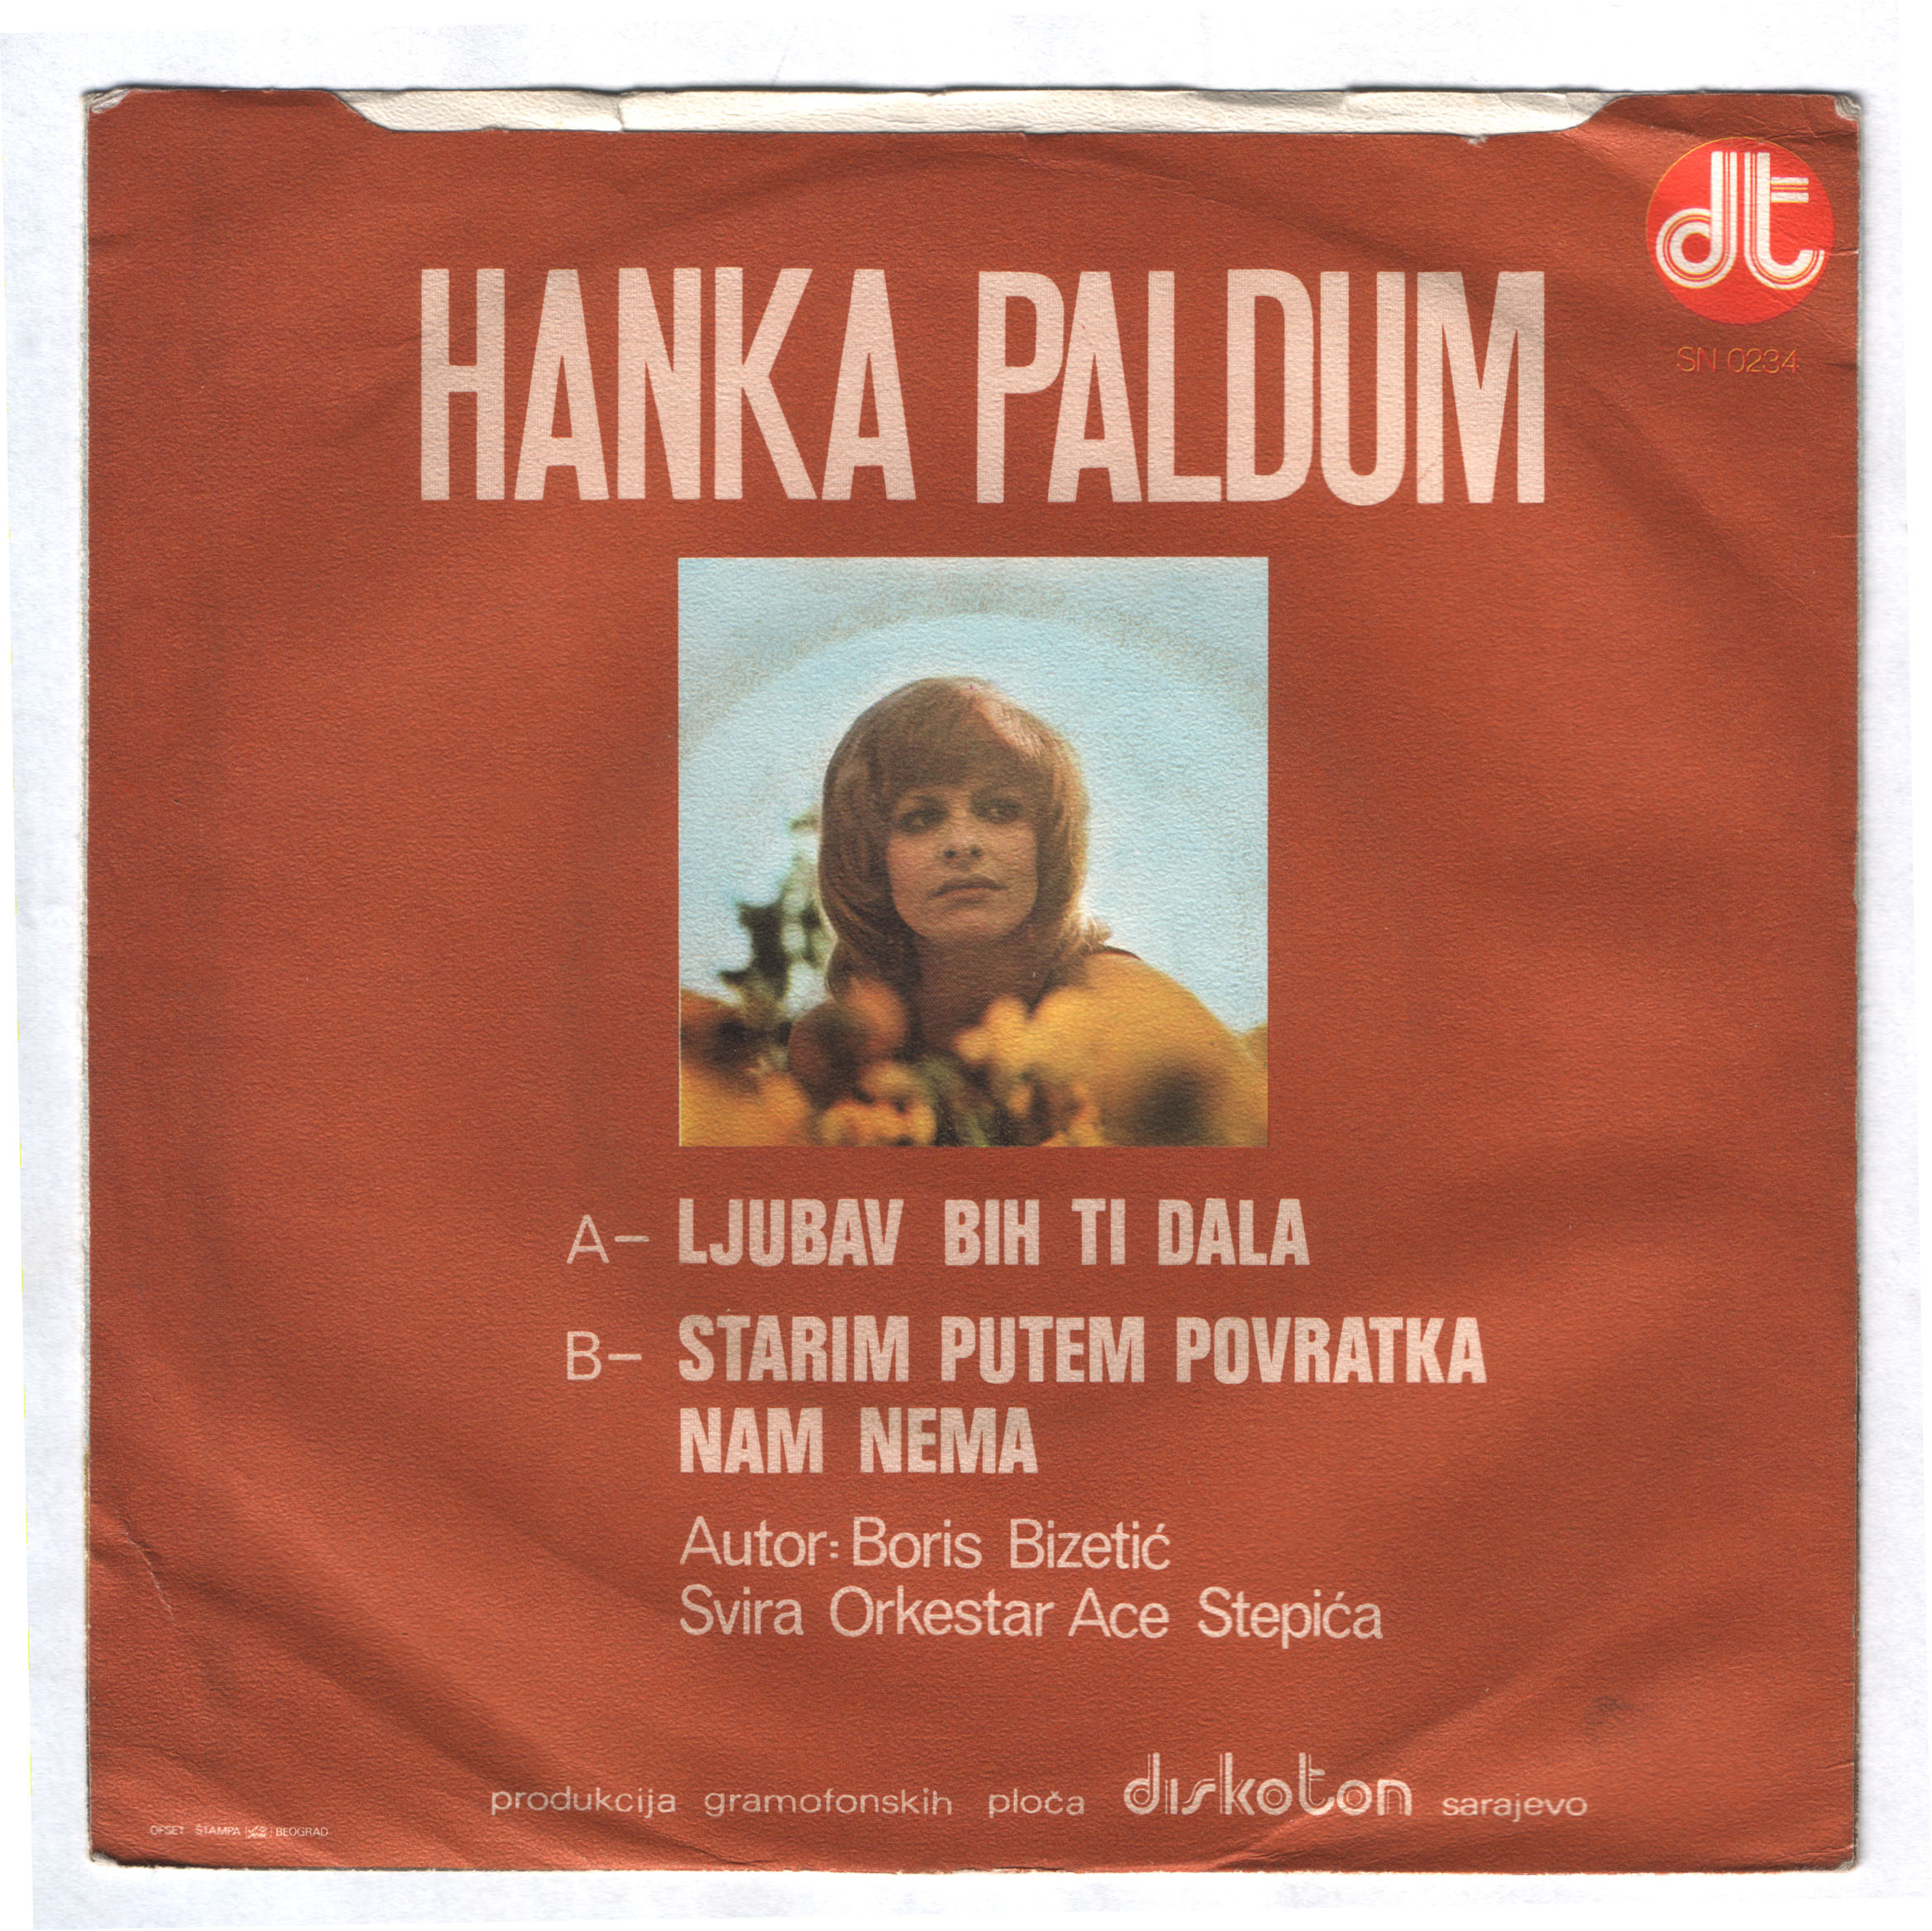 Hanka Paldum 1976 Ljubav bih ti dala zadnja